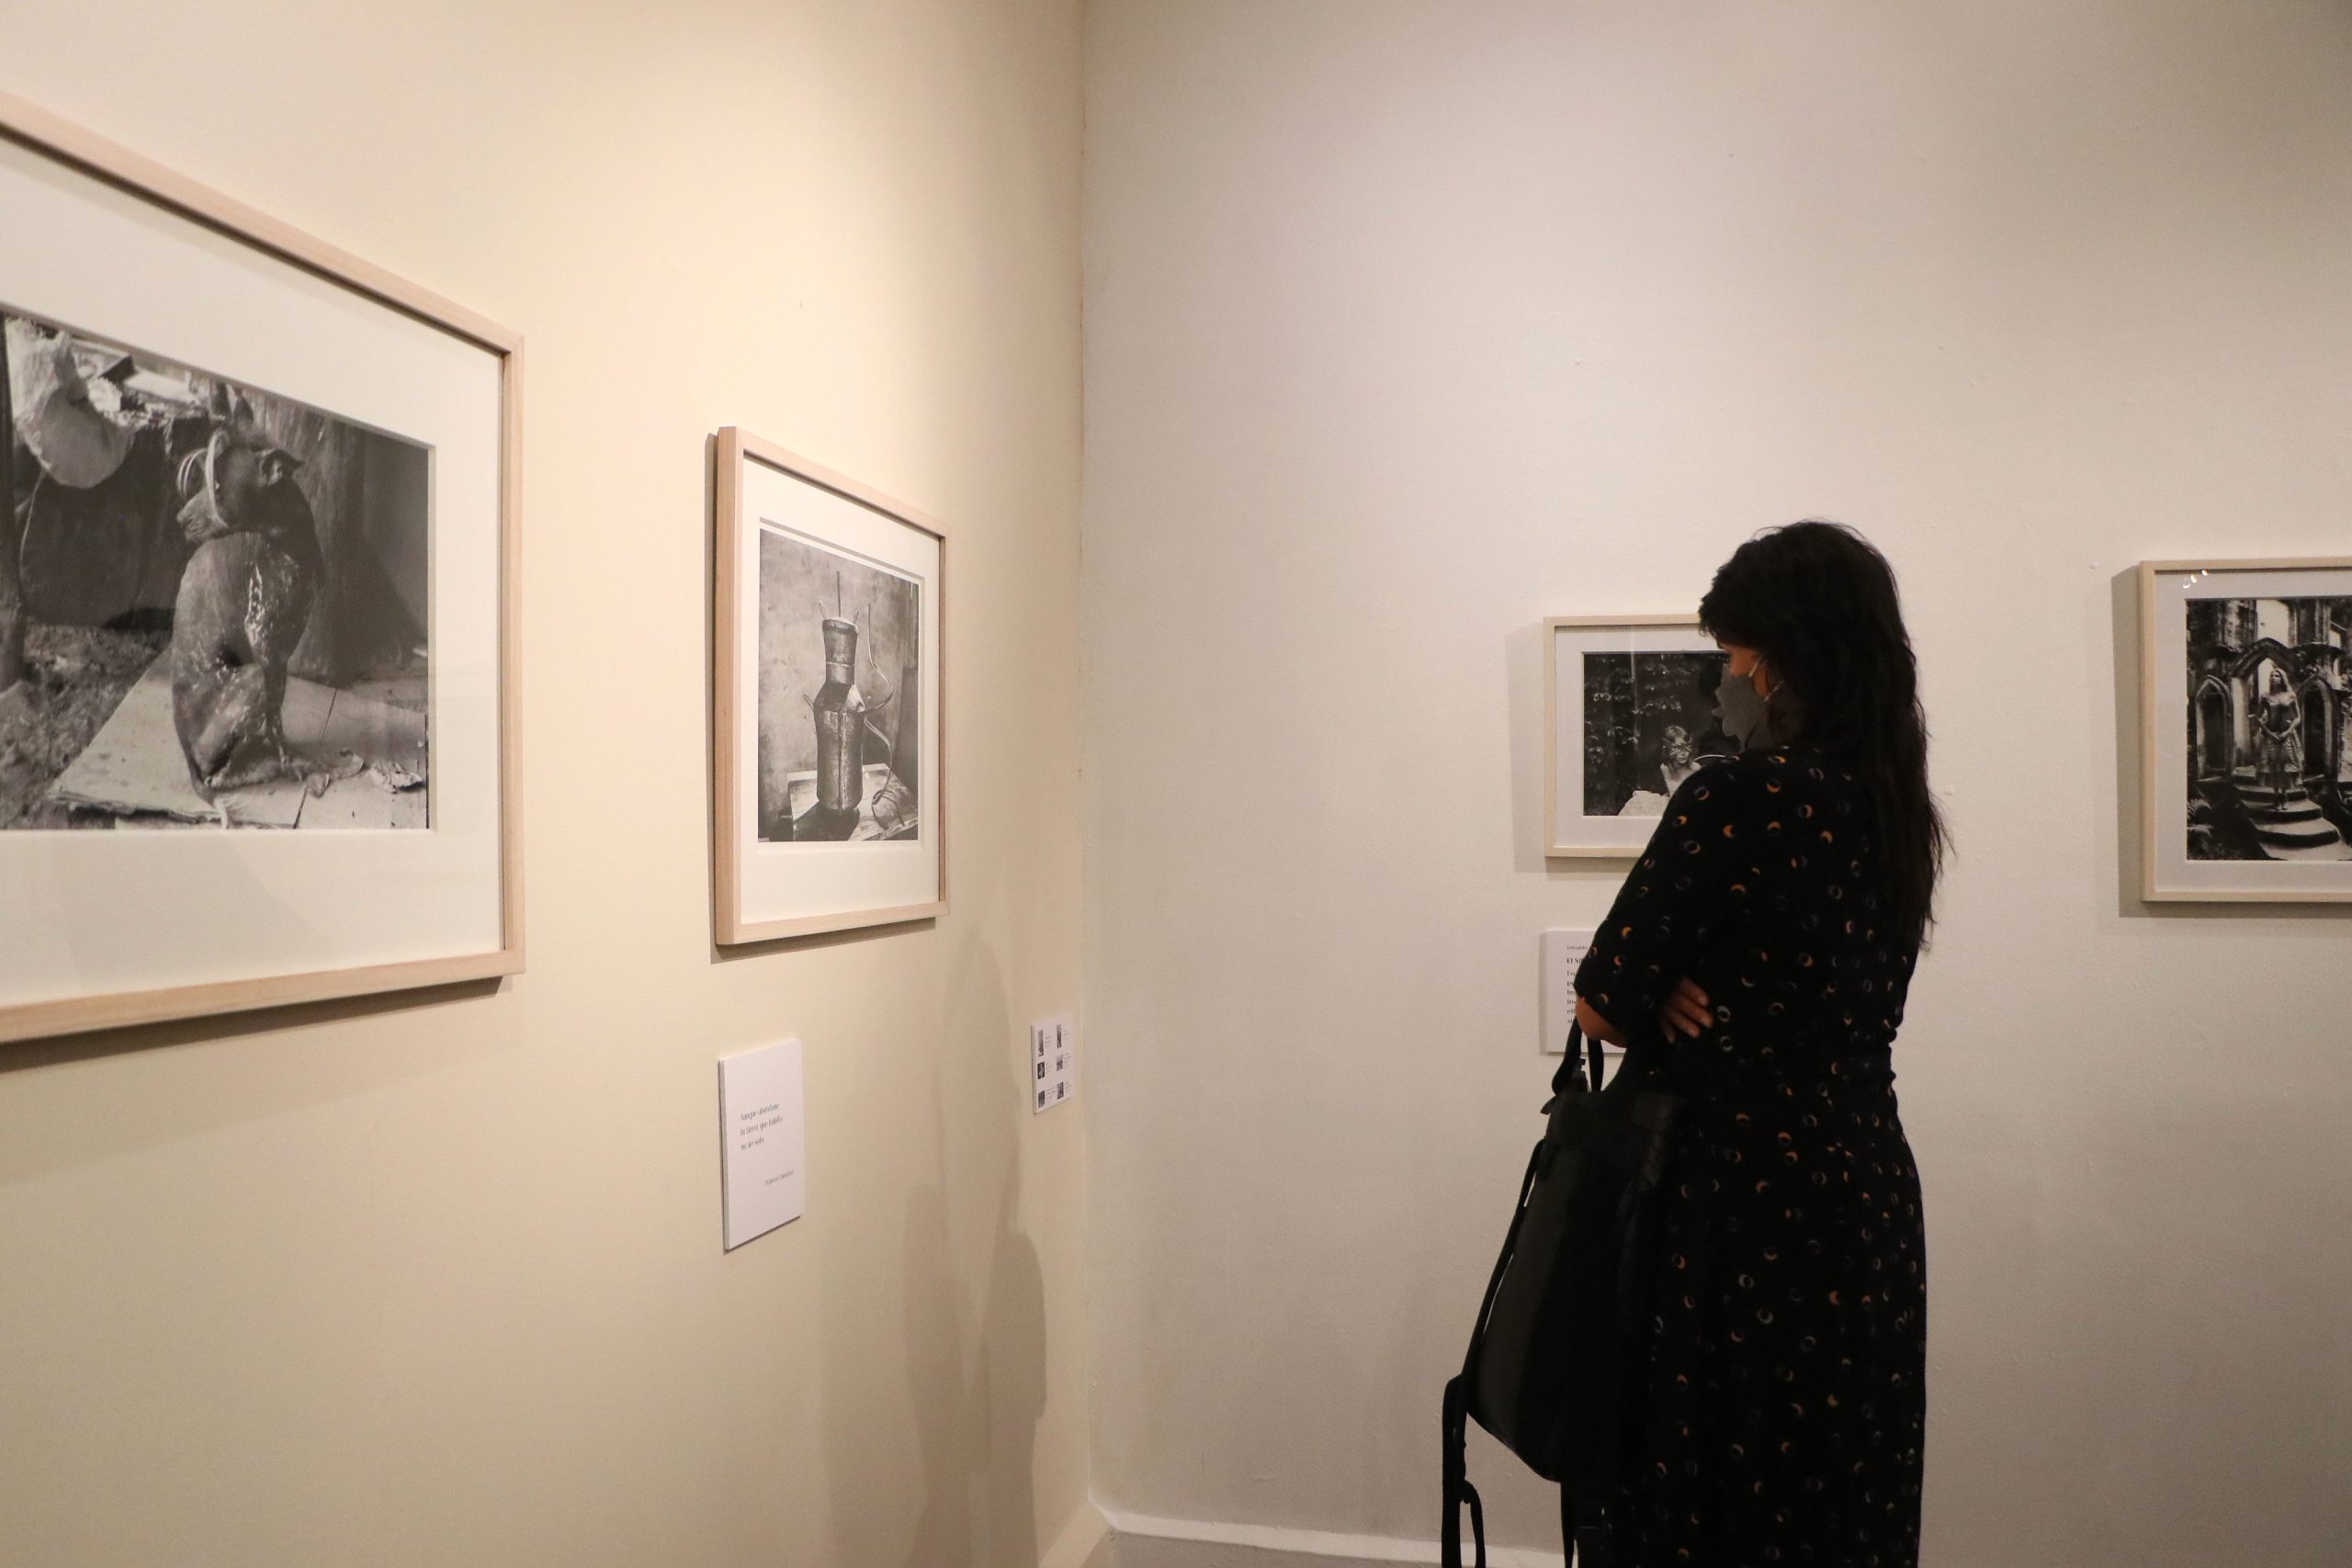 Jueves 12 de mayo de 2022

En el Museo Archivo de la Fotografía (MAF), se inauguró la exposición Encuentros afortunados, de Nadja Massün.

Fotografía: Tania Victoria/ Secretaría de Cultura de la Ciudad de México